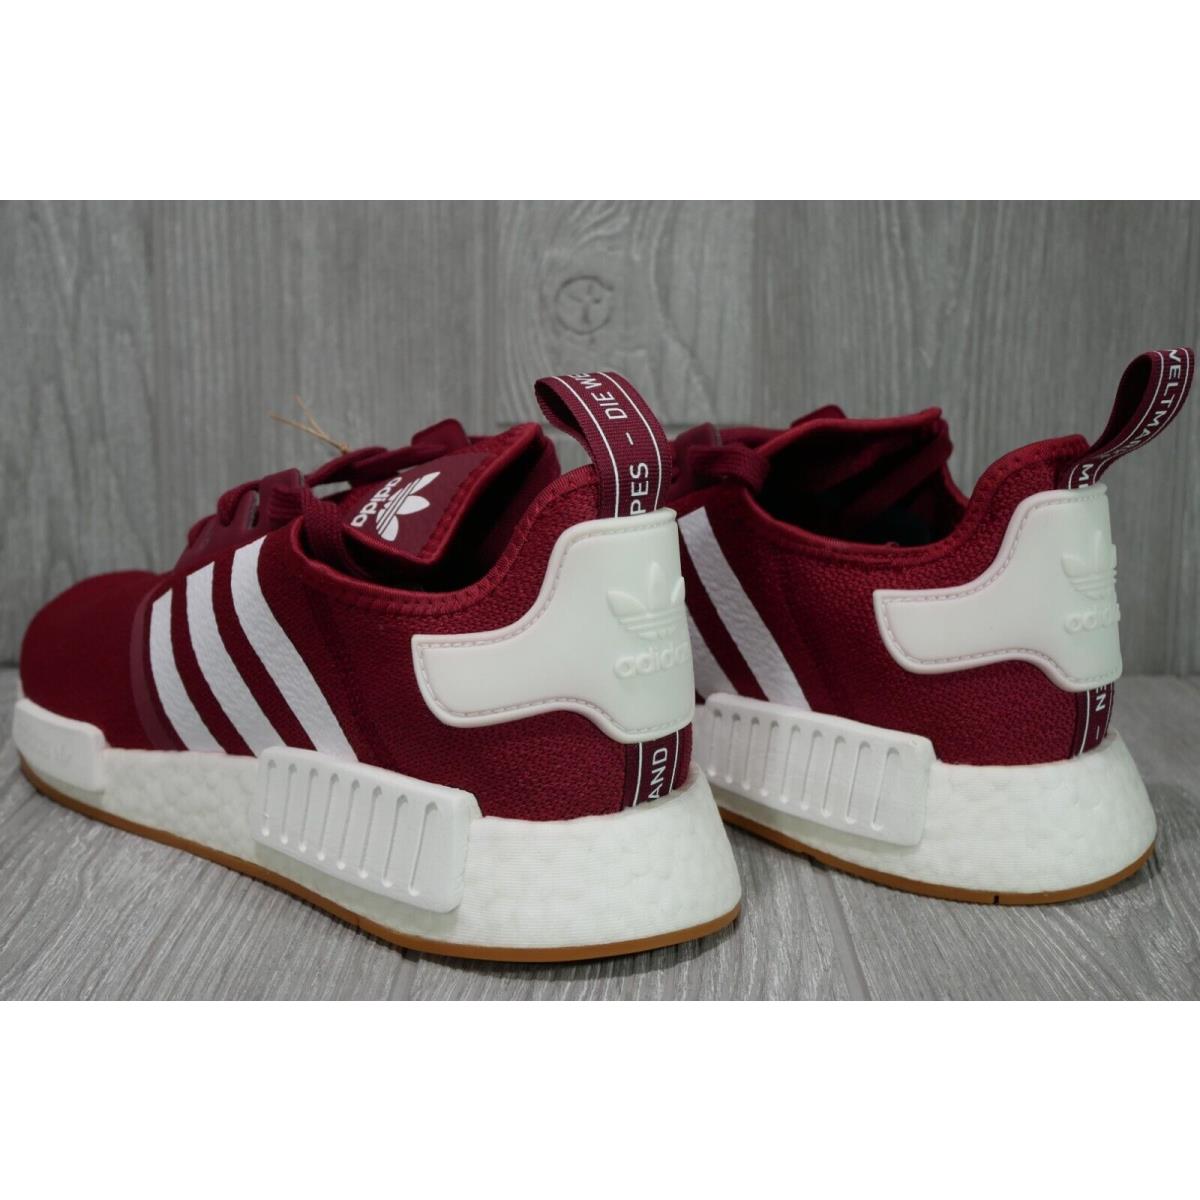 Adidas shoes Originals - Red 2